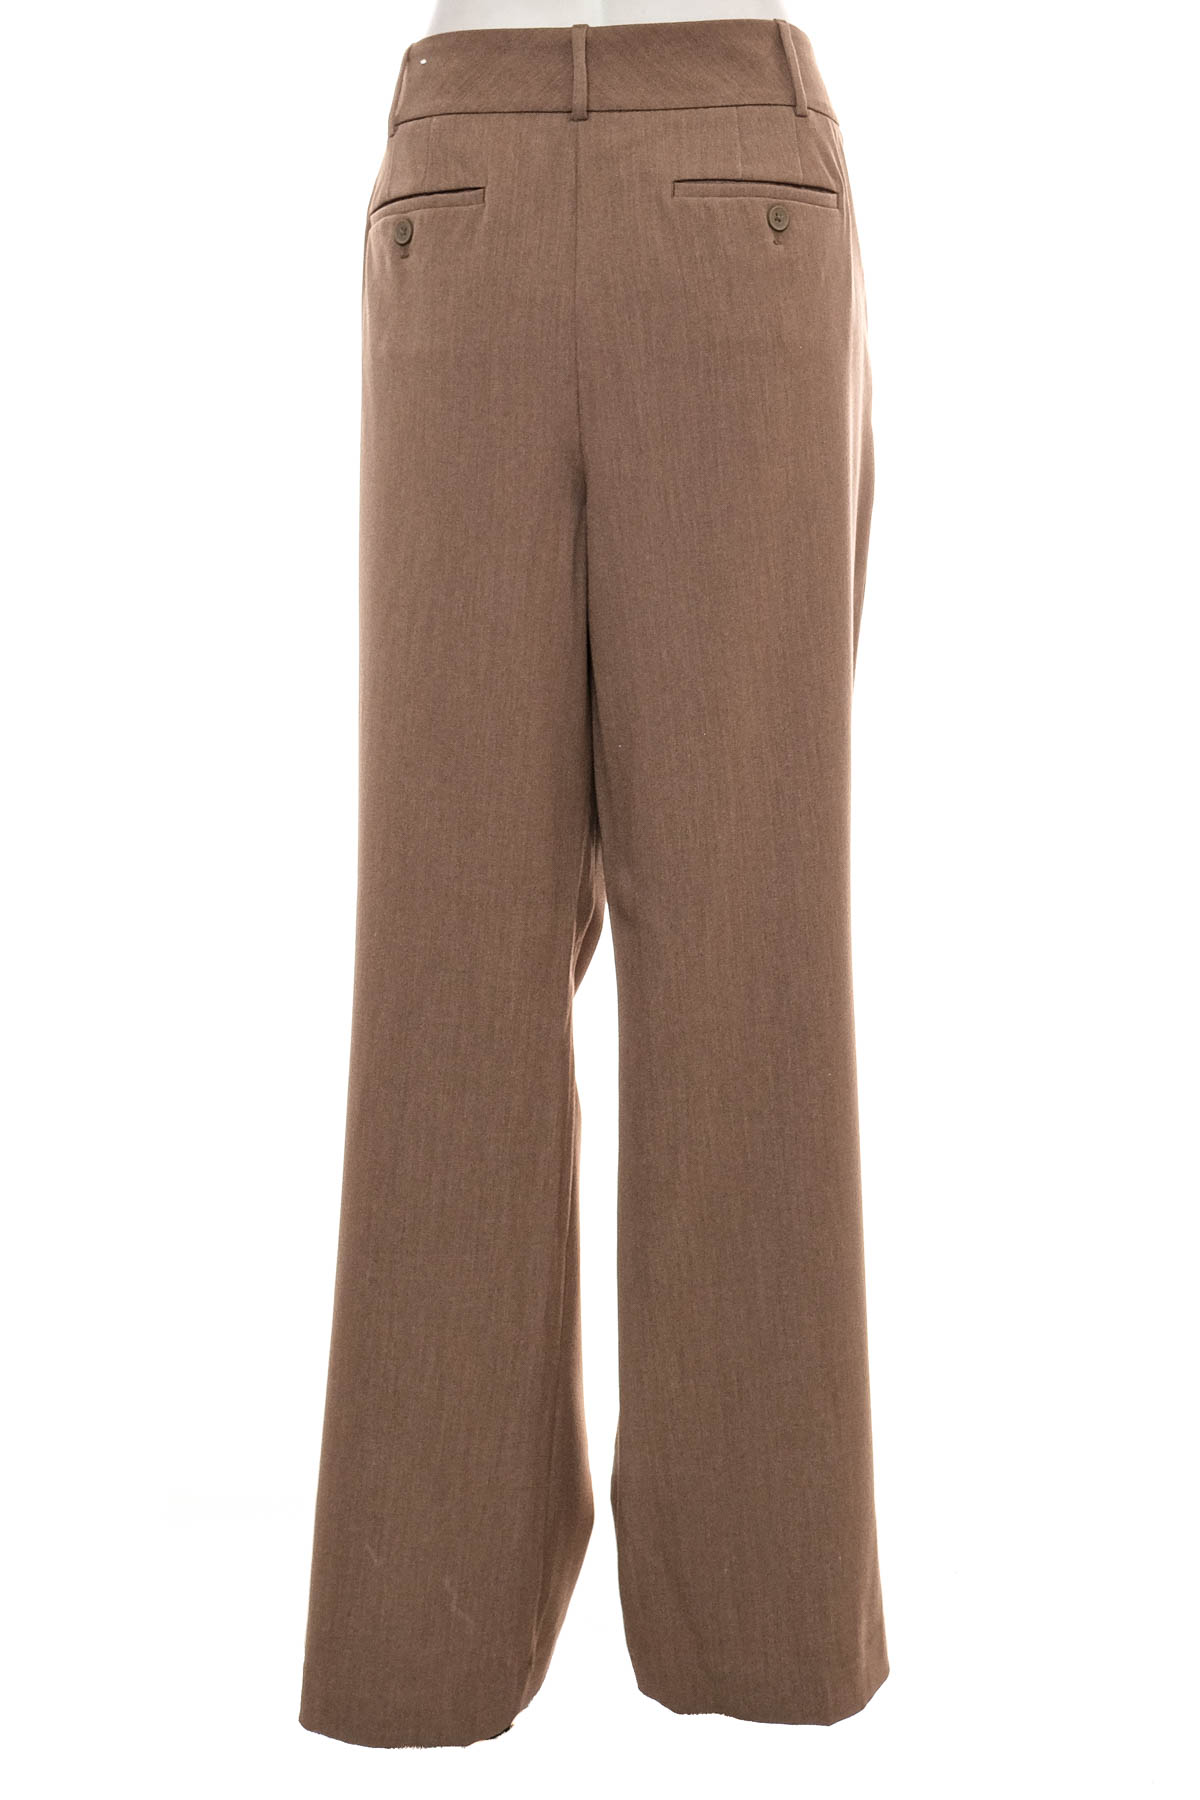 Women's trousers - LOFT - 1